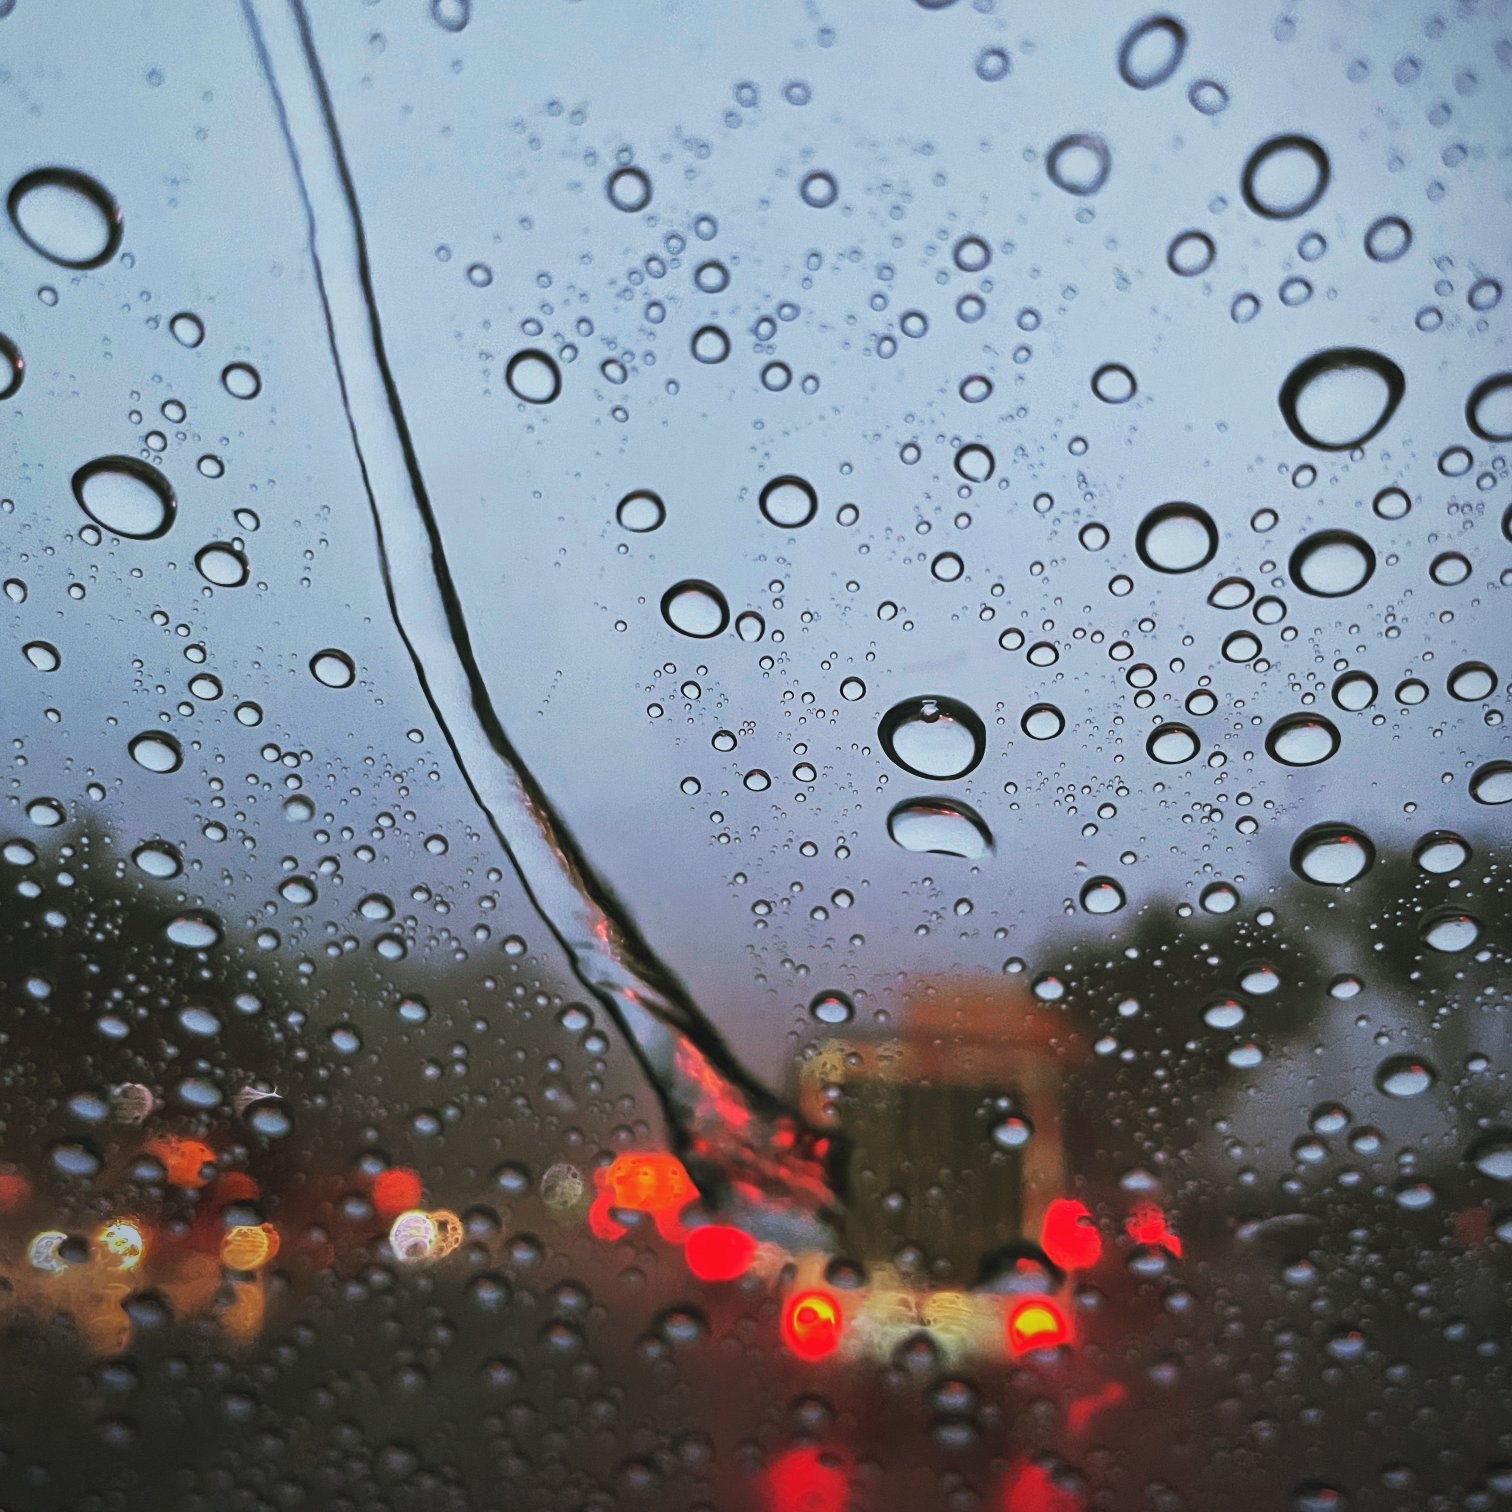 #下雨天# #我和p7#  下雨天 怎么可以错过车窗上的水珠和灯光奇妙的